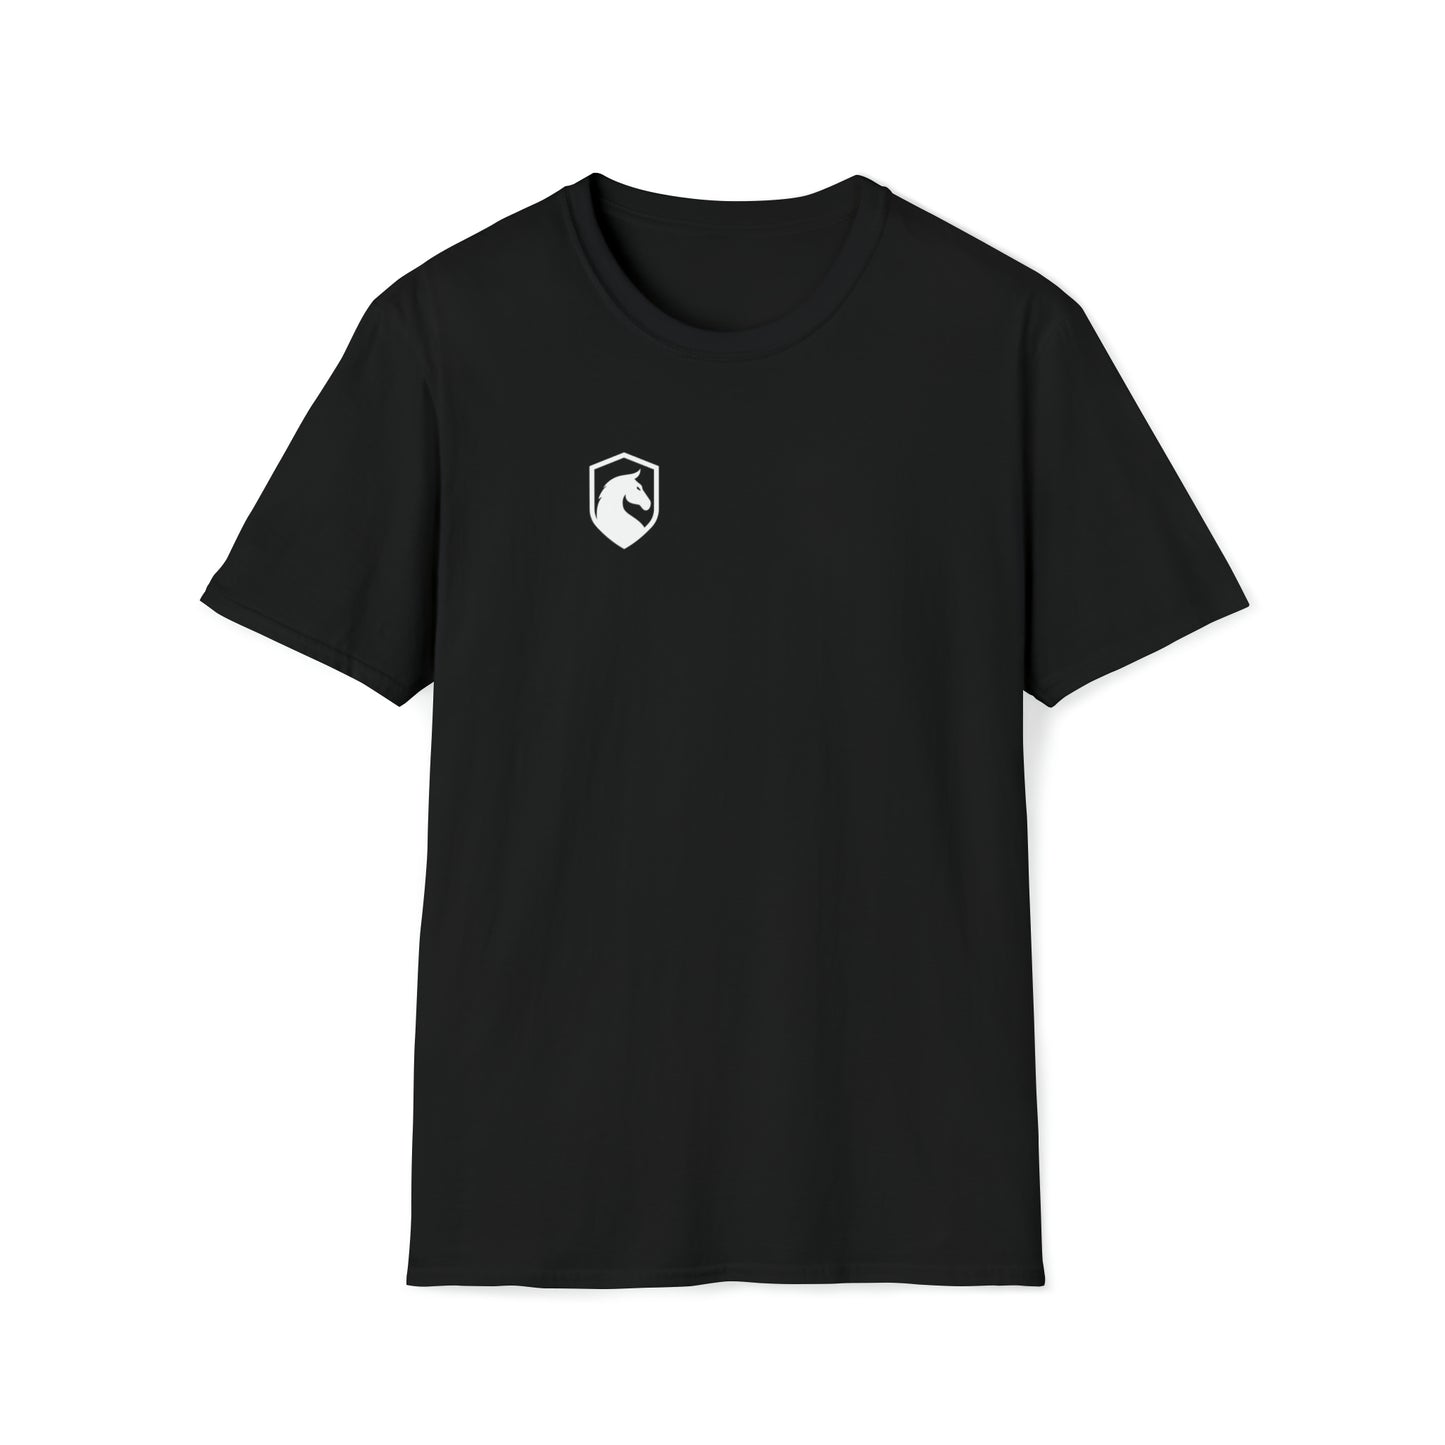 DarkHorse T-Shirt - Unisex